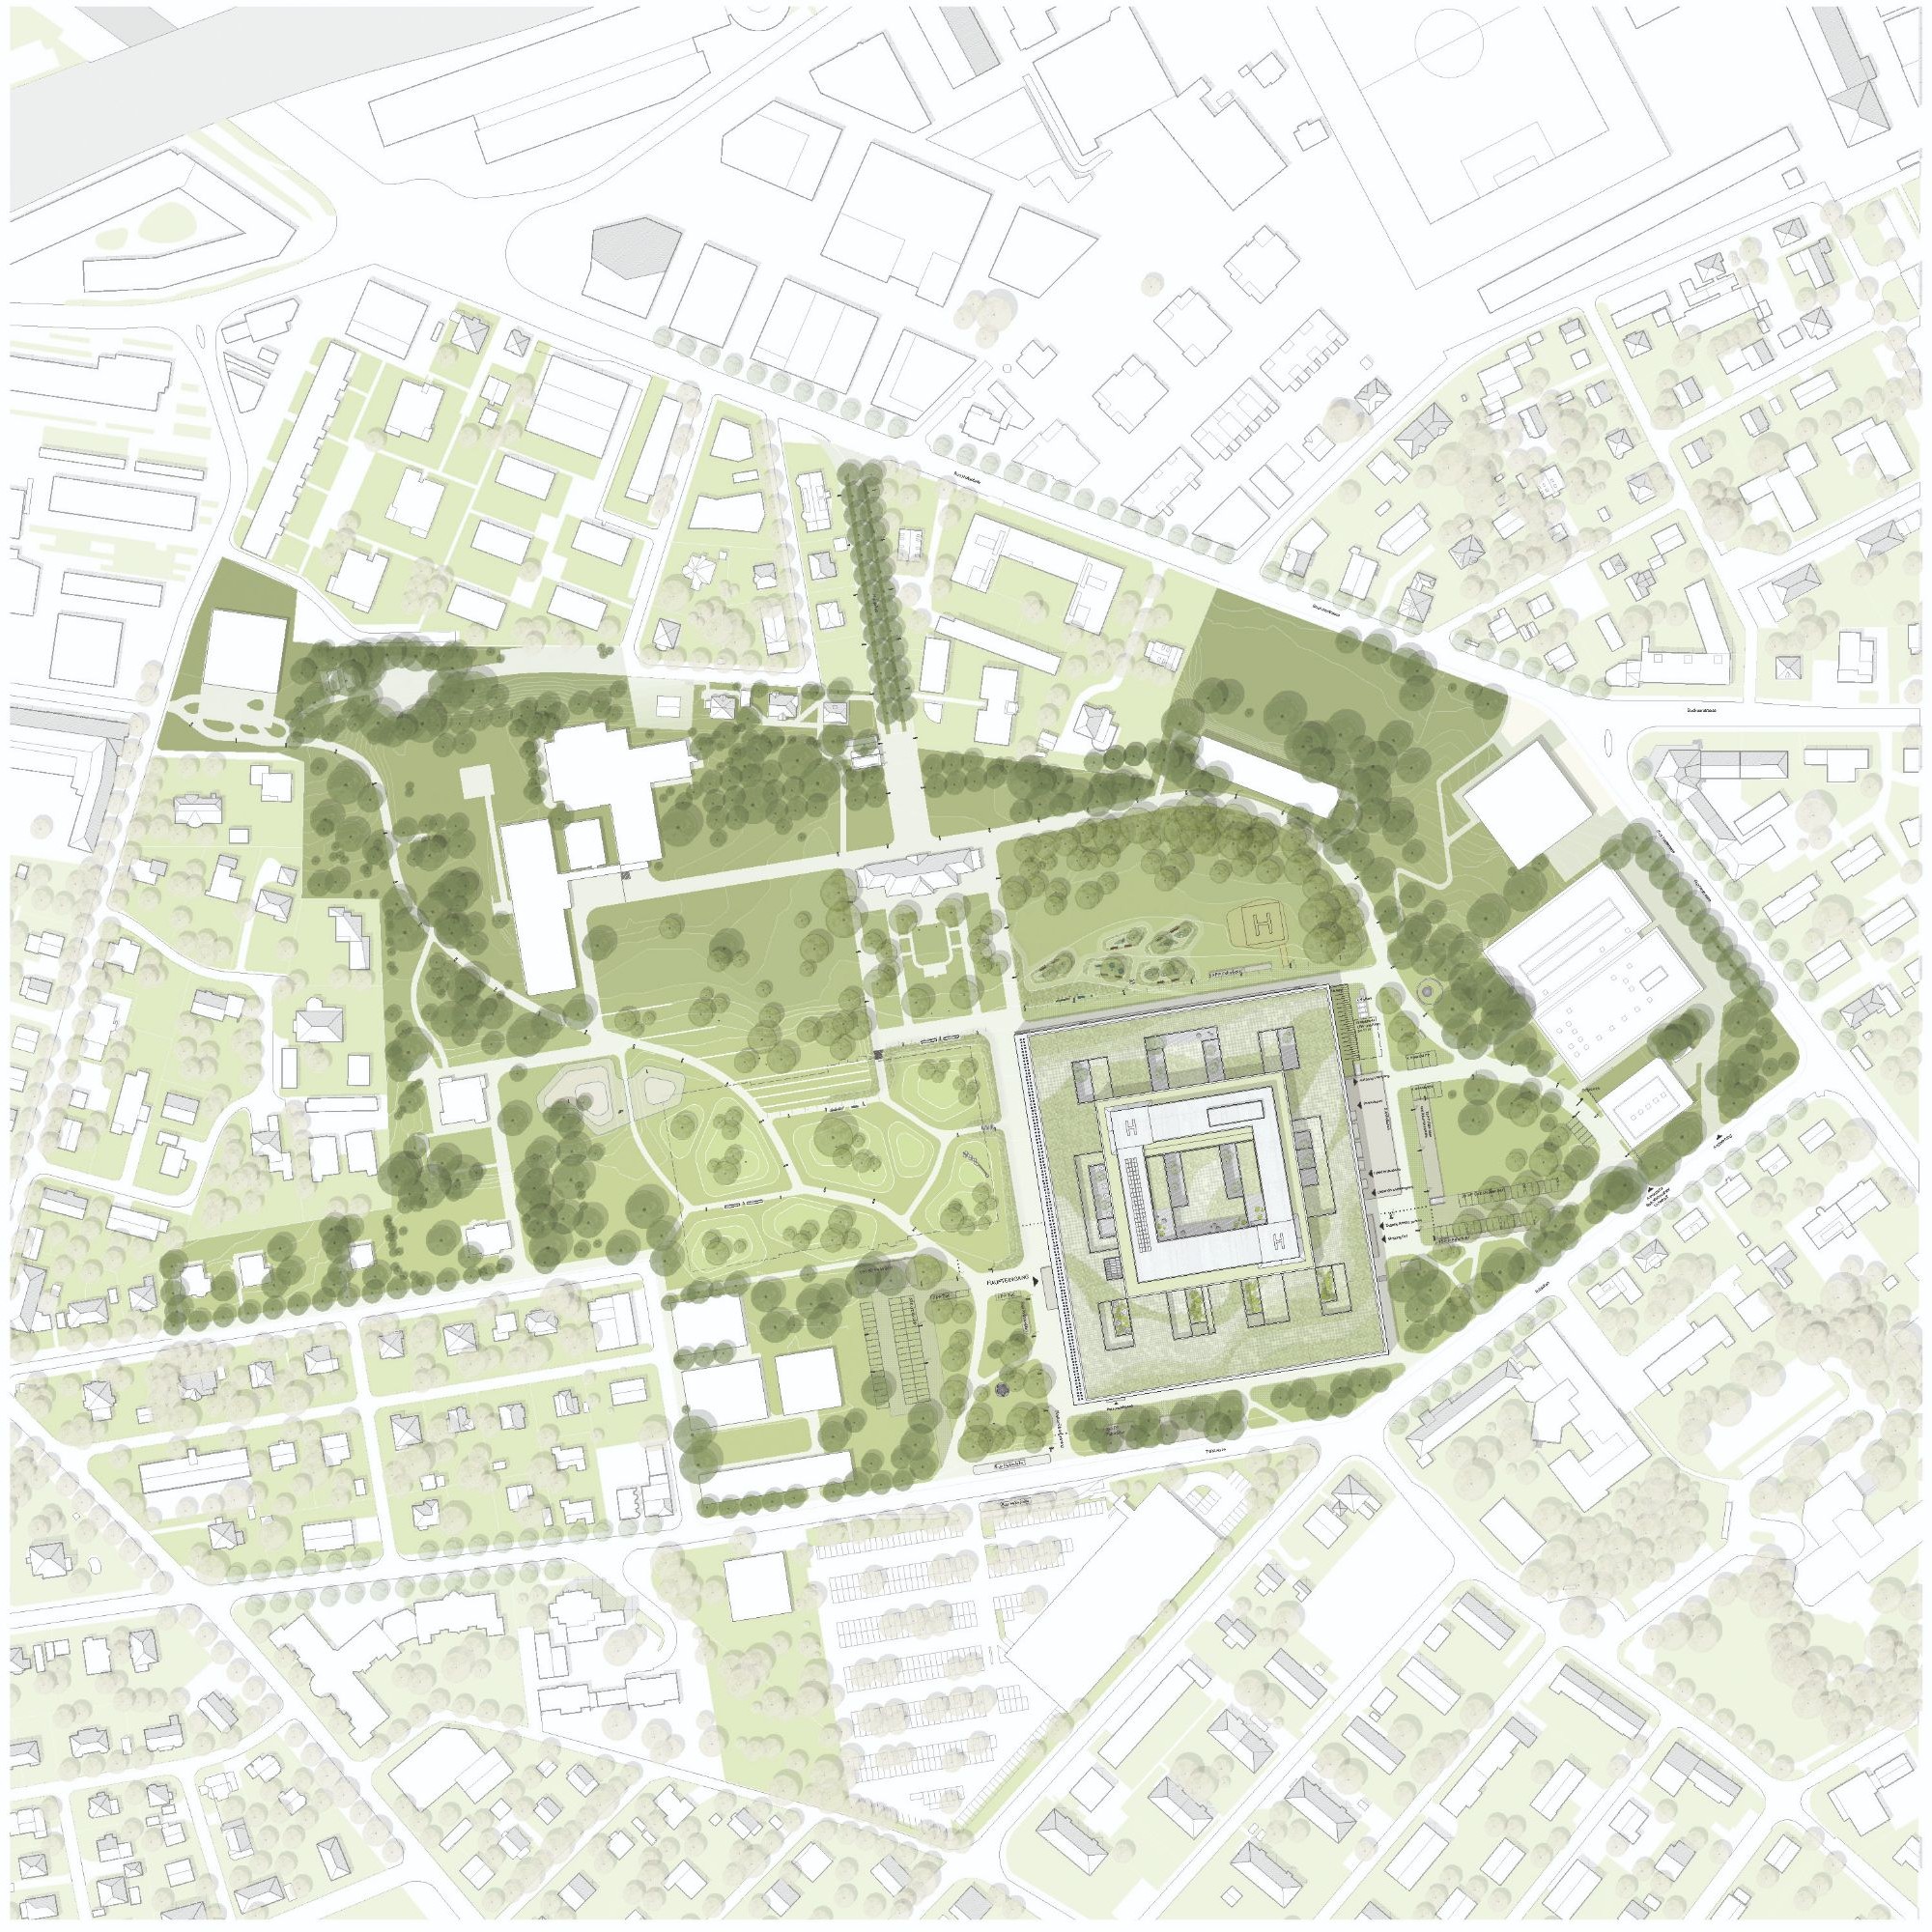 Plan des Grünflächen-Areals: Der bestehende historische Garten des KSA soll in die Neugestaltung integriert werden. 